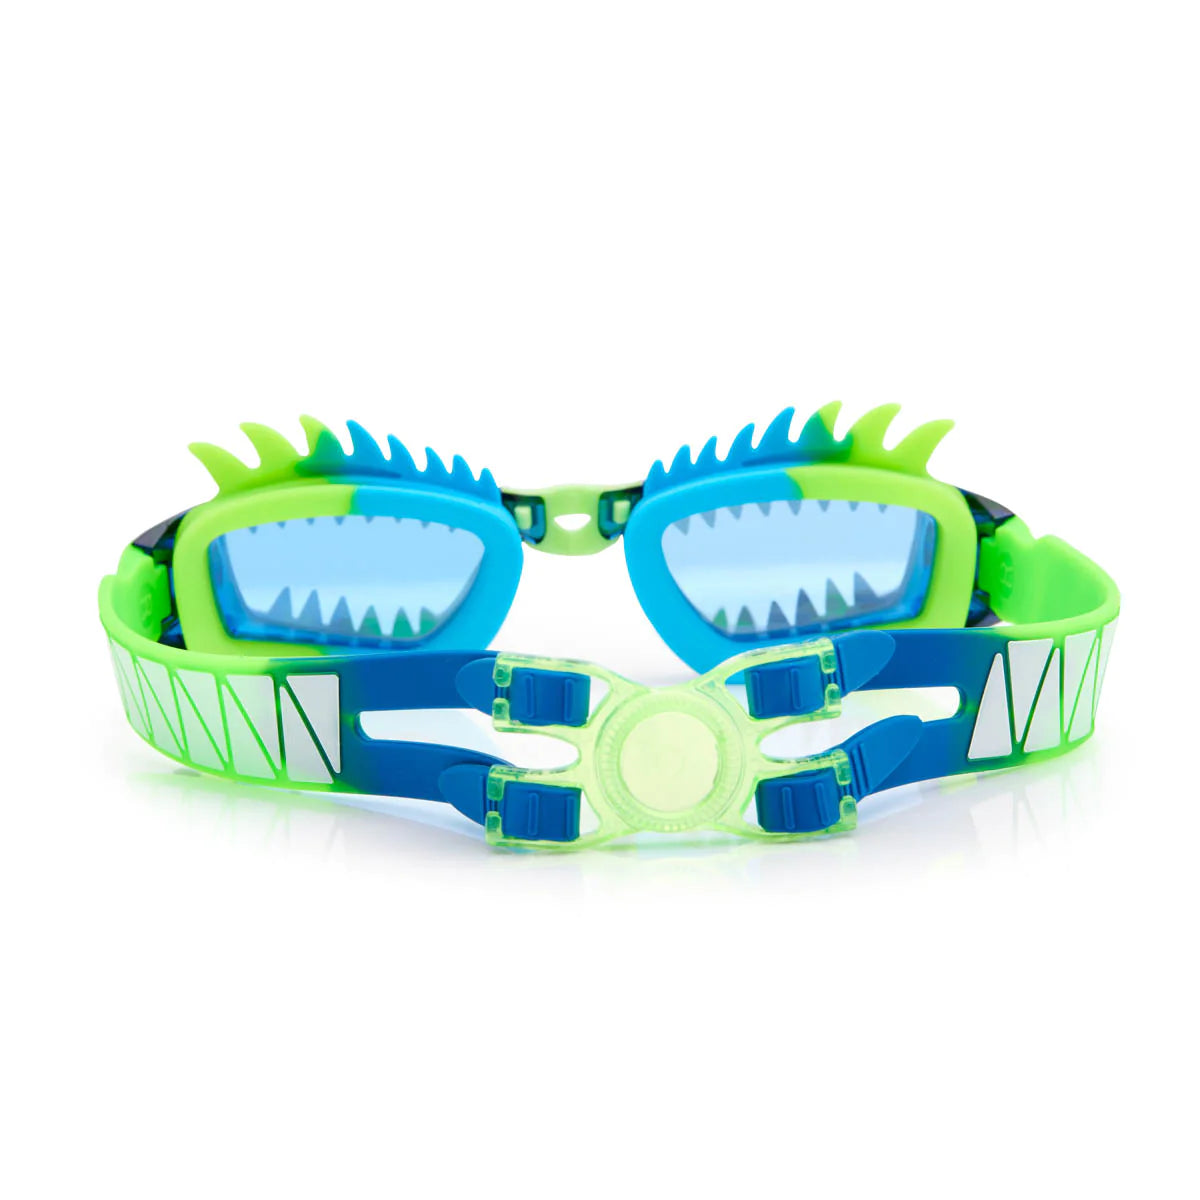 Draco Sea Dragon Swim Goggles  - Doodlebug's Children's Boutique